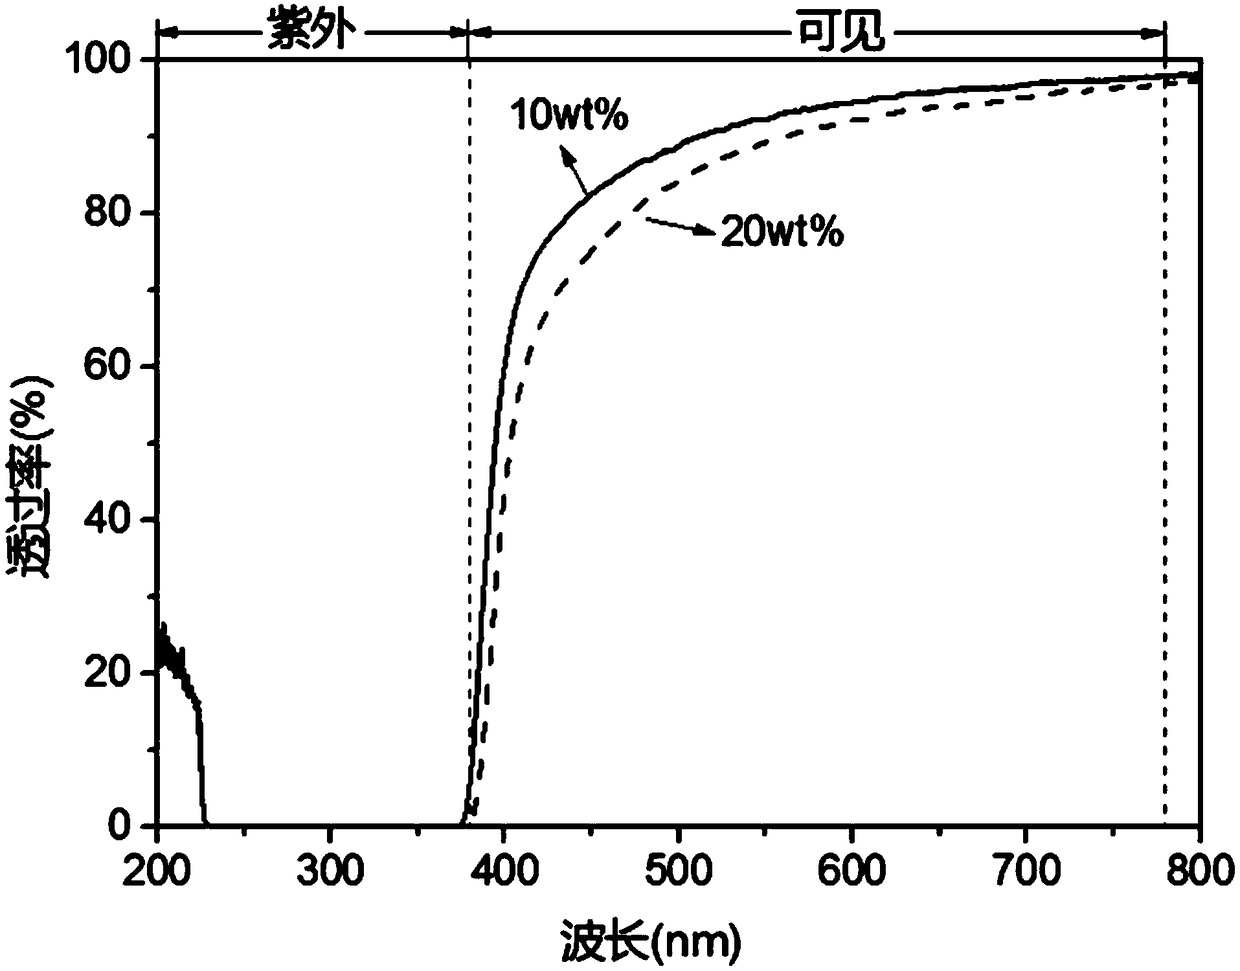 Transparent zinc oxide liquid phase dispersion preparing method